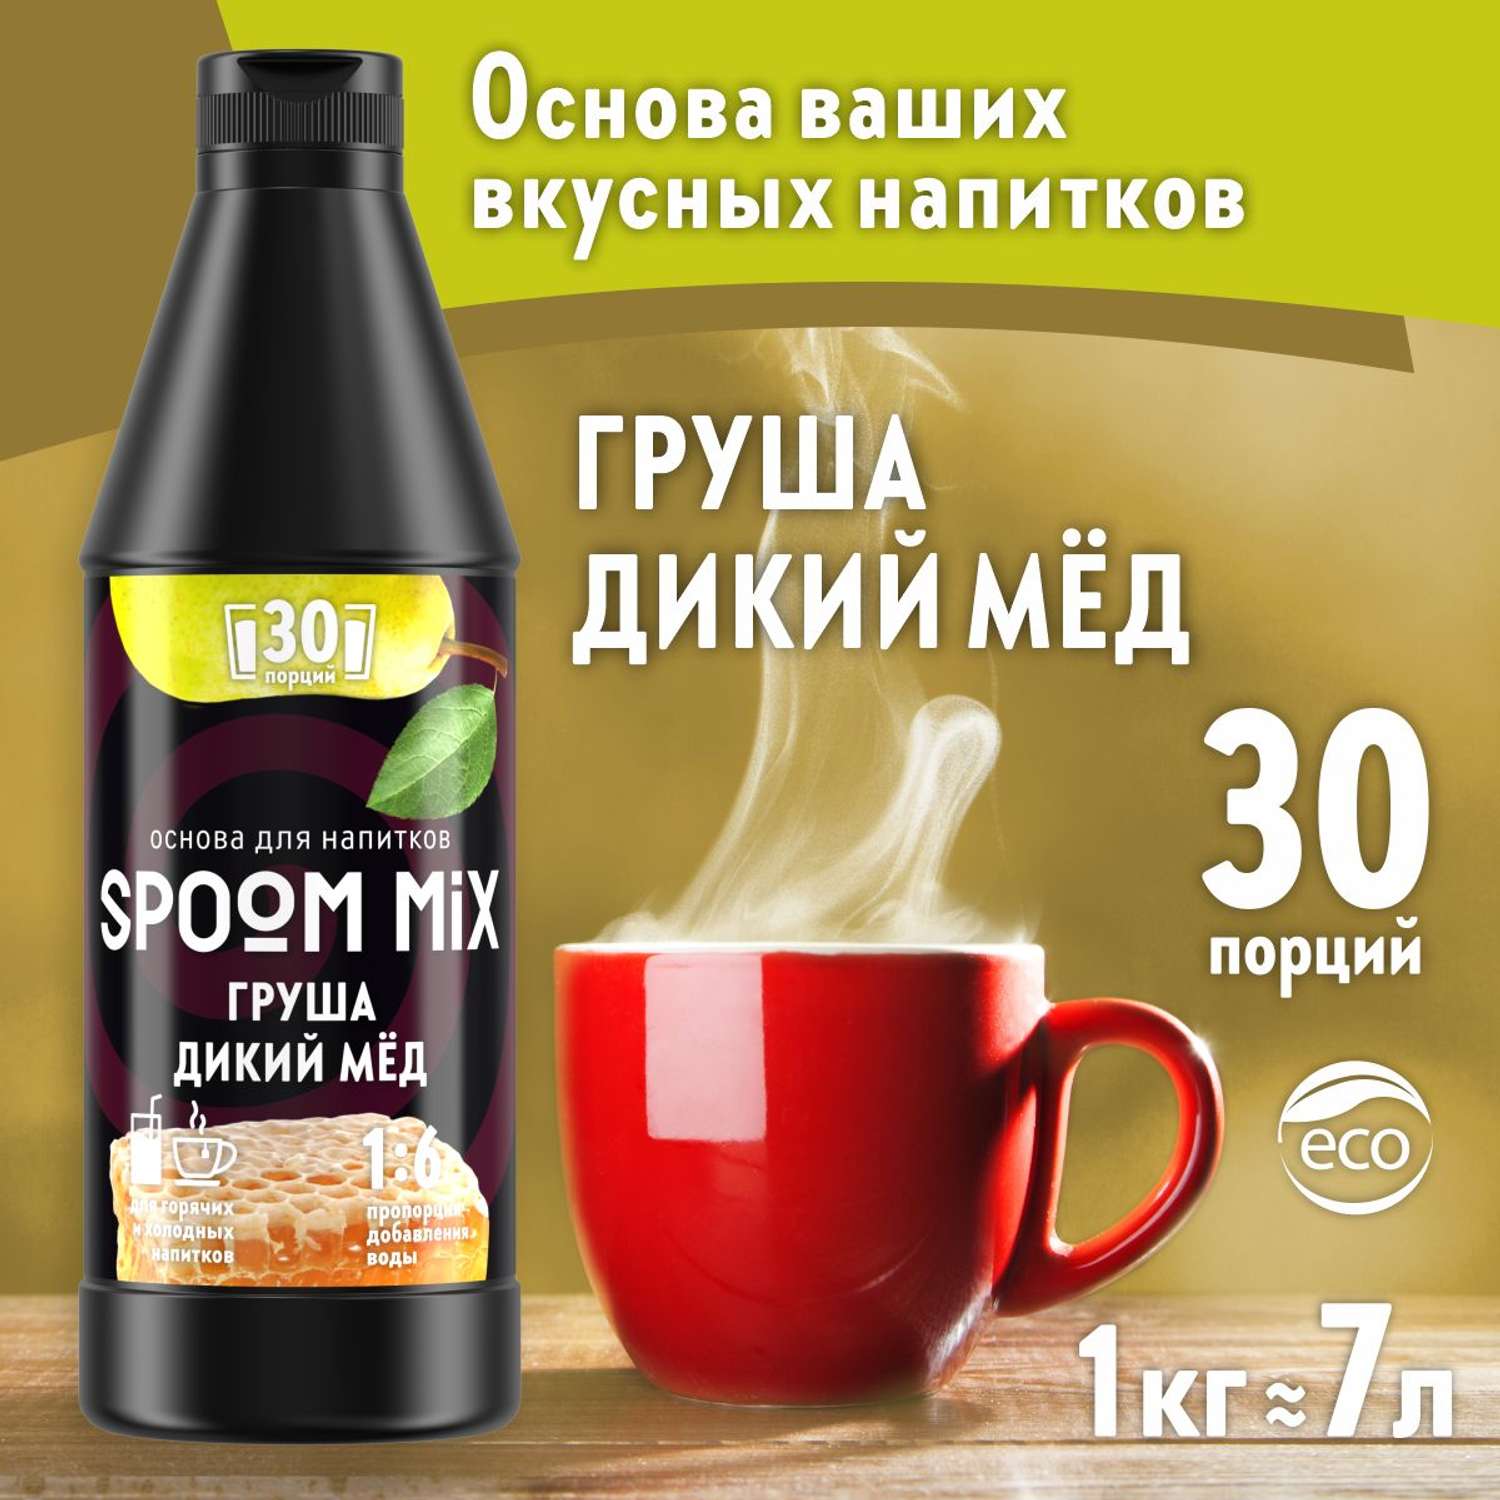 Основа для напитков SPOOM MIX Груша дикий мёд 1 кг - фото 1